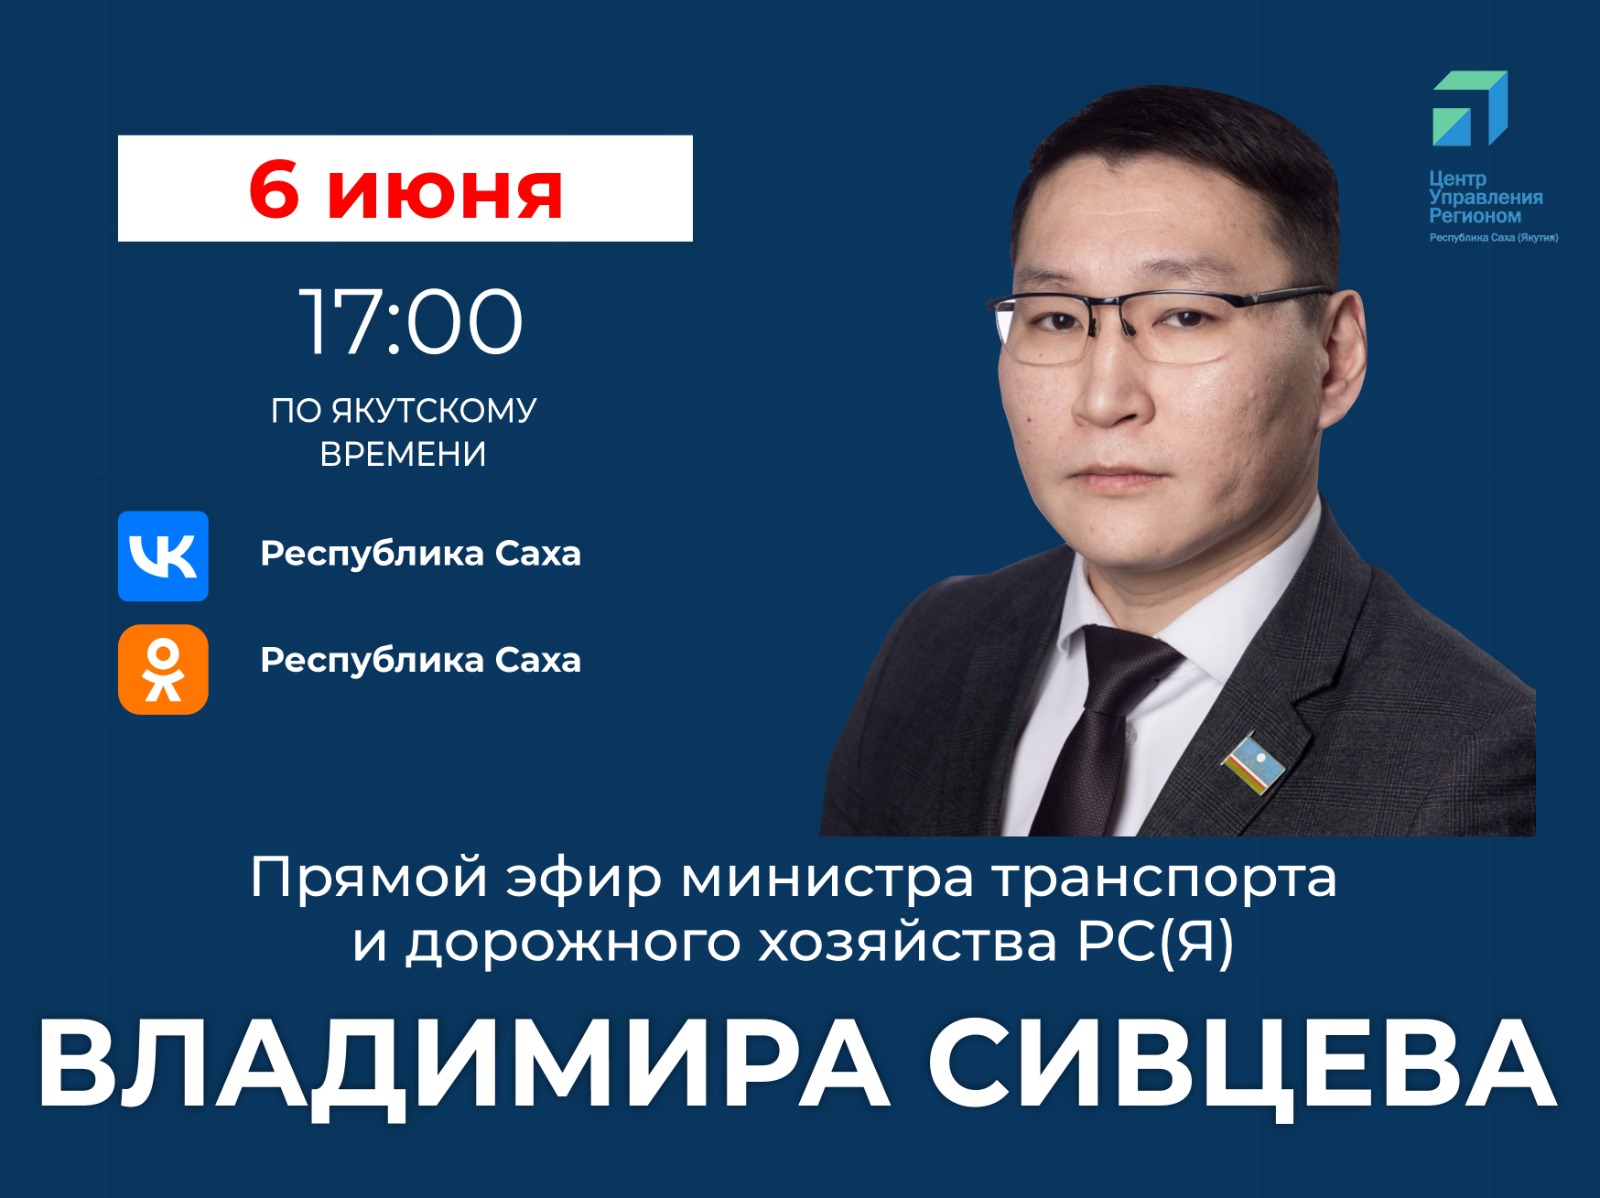 Министр транспорта и дорожного хозяйства Якутии проведет прямой эфир в соцсетях